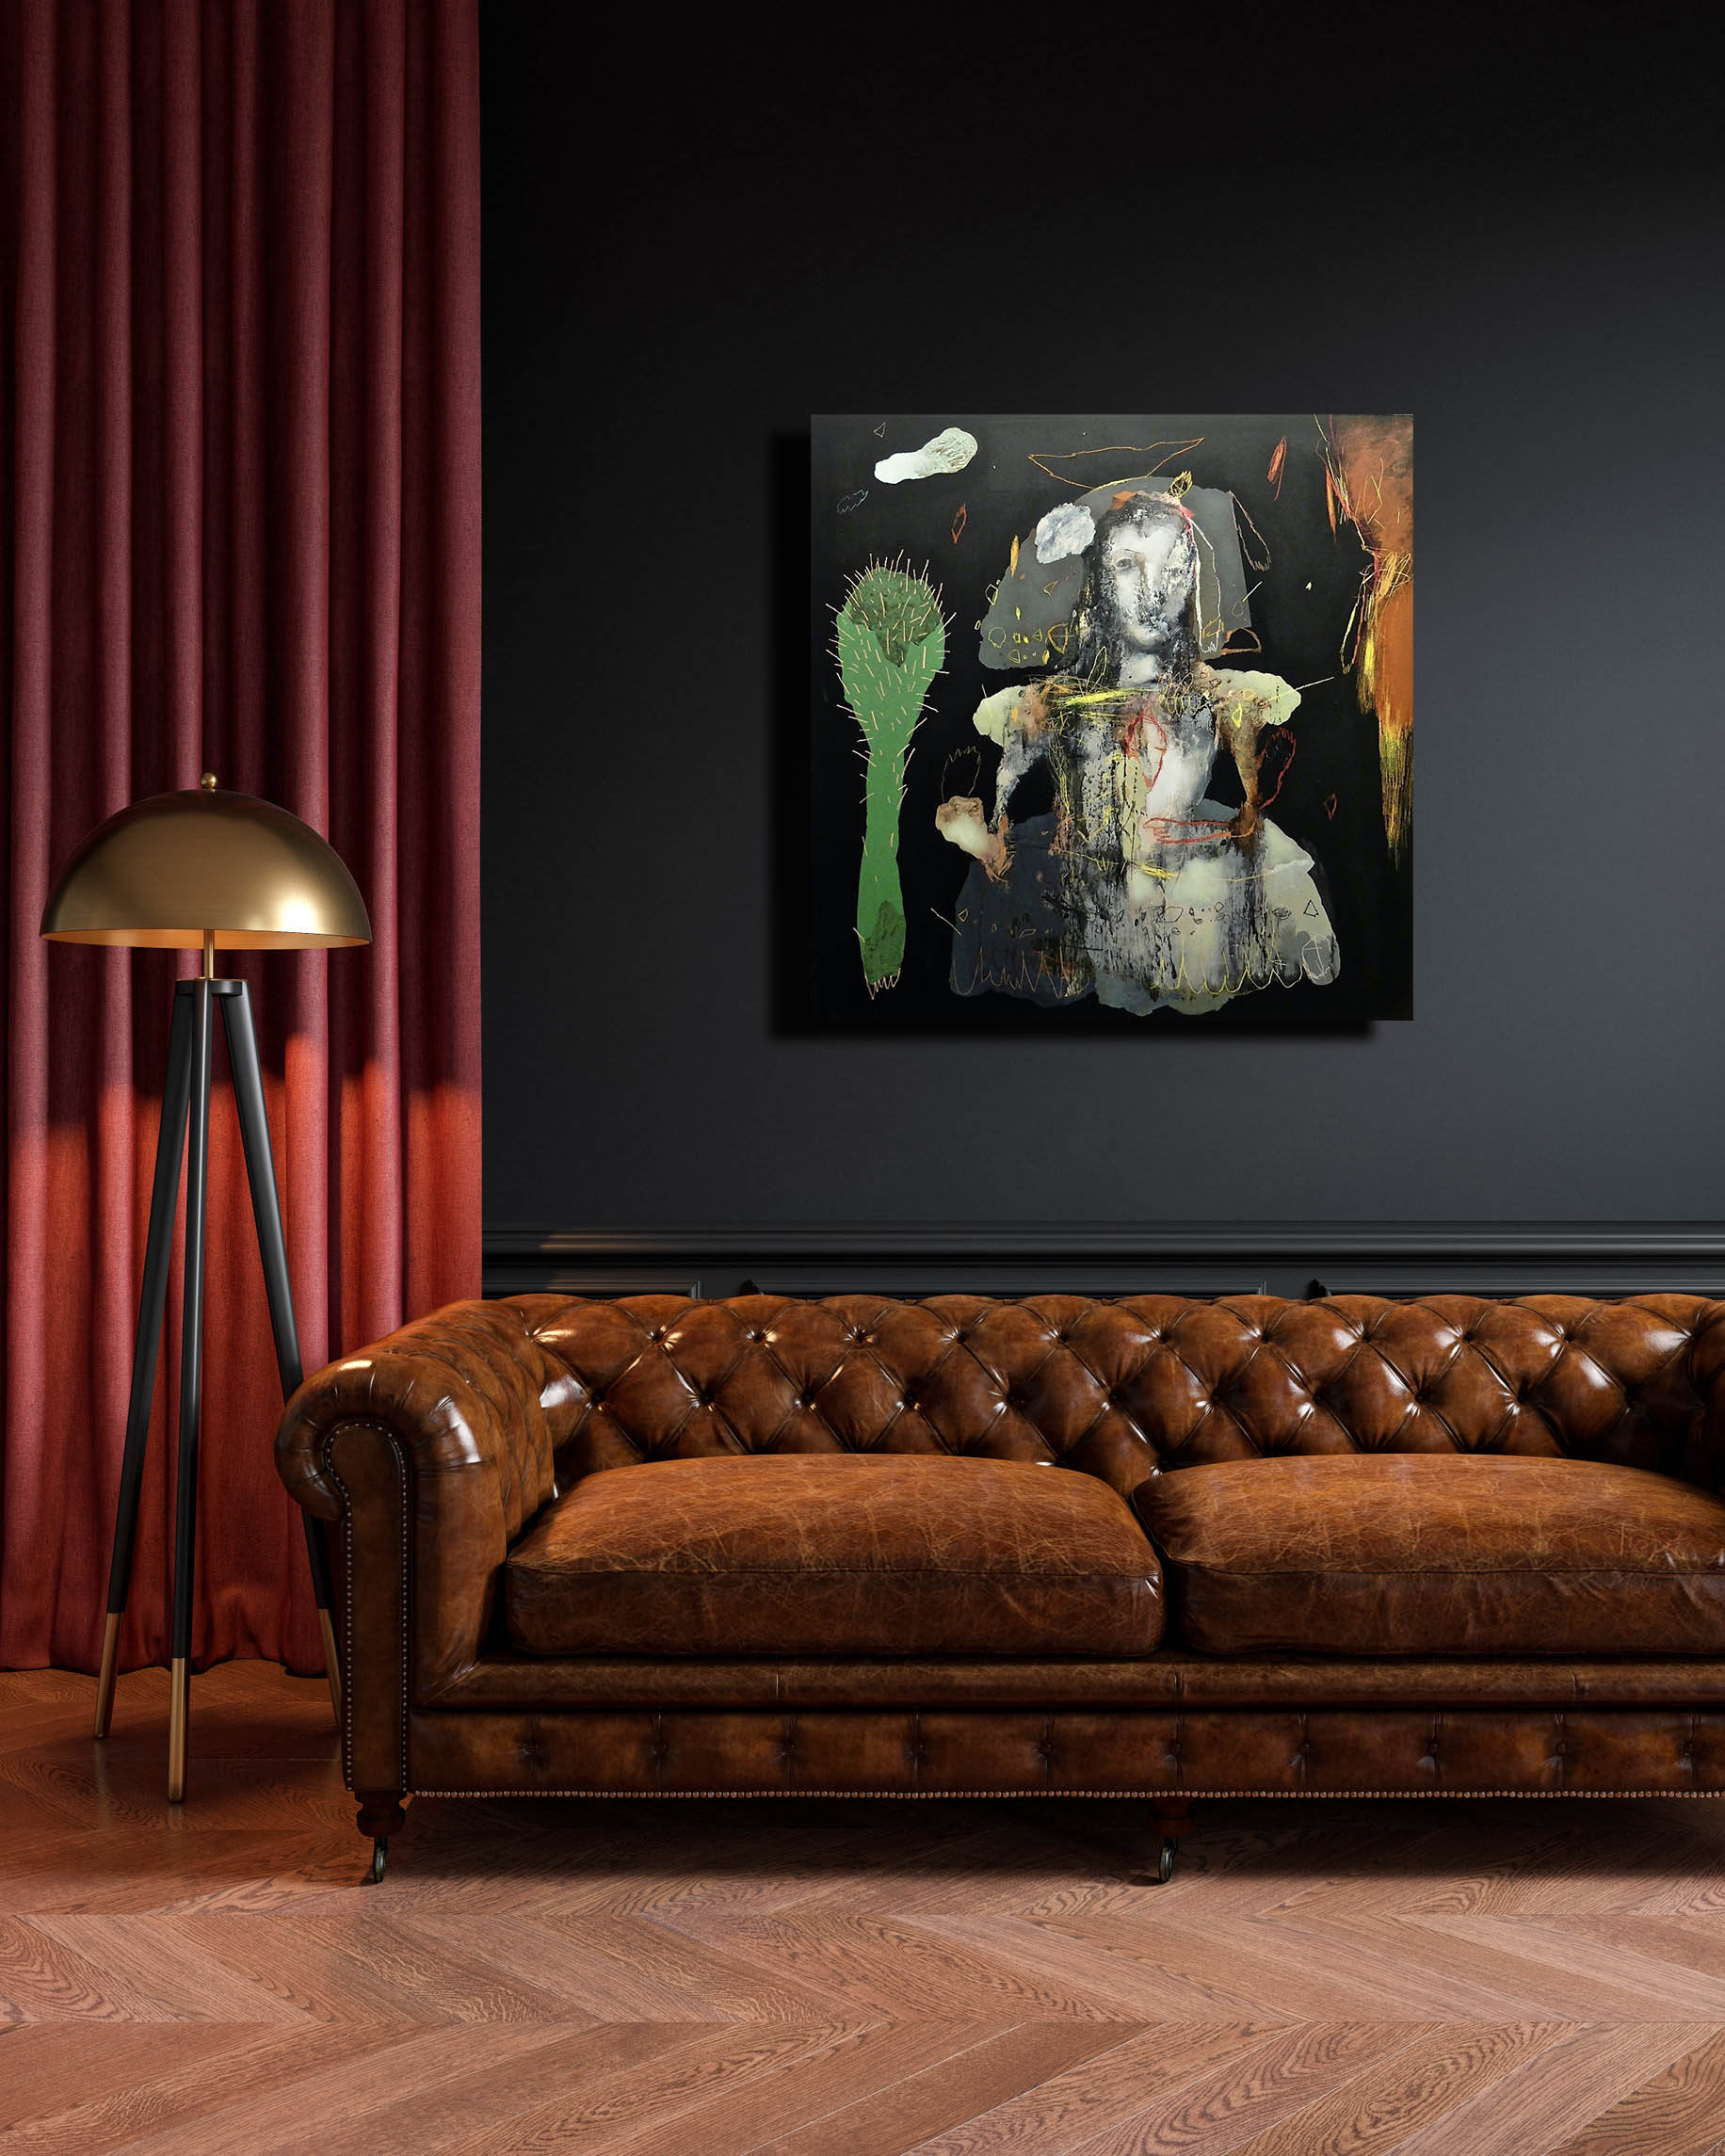 peinture acrylique personnages fantasmagoriques de jean louis bessede in situ